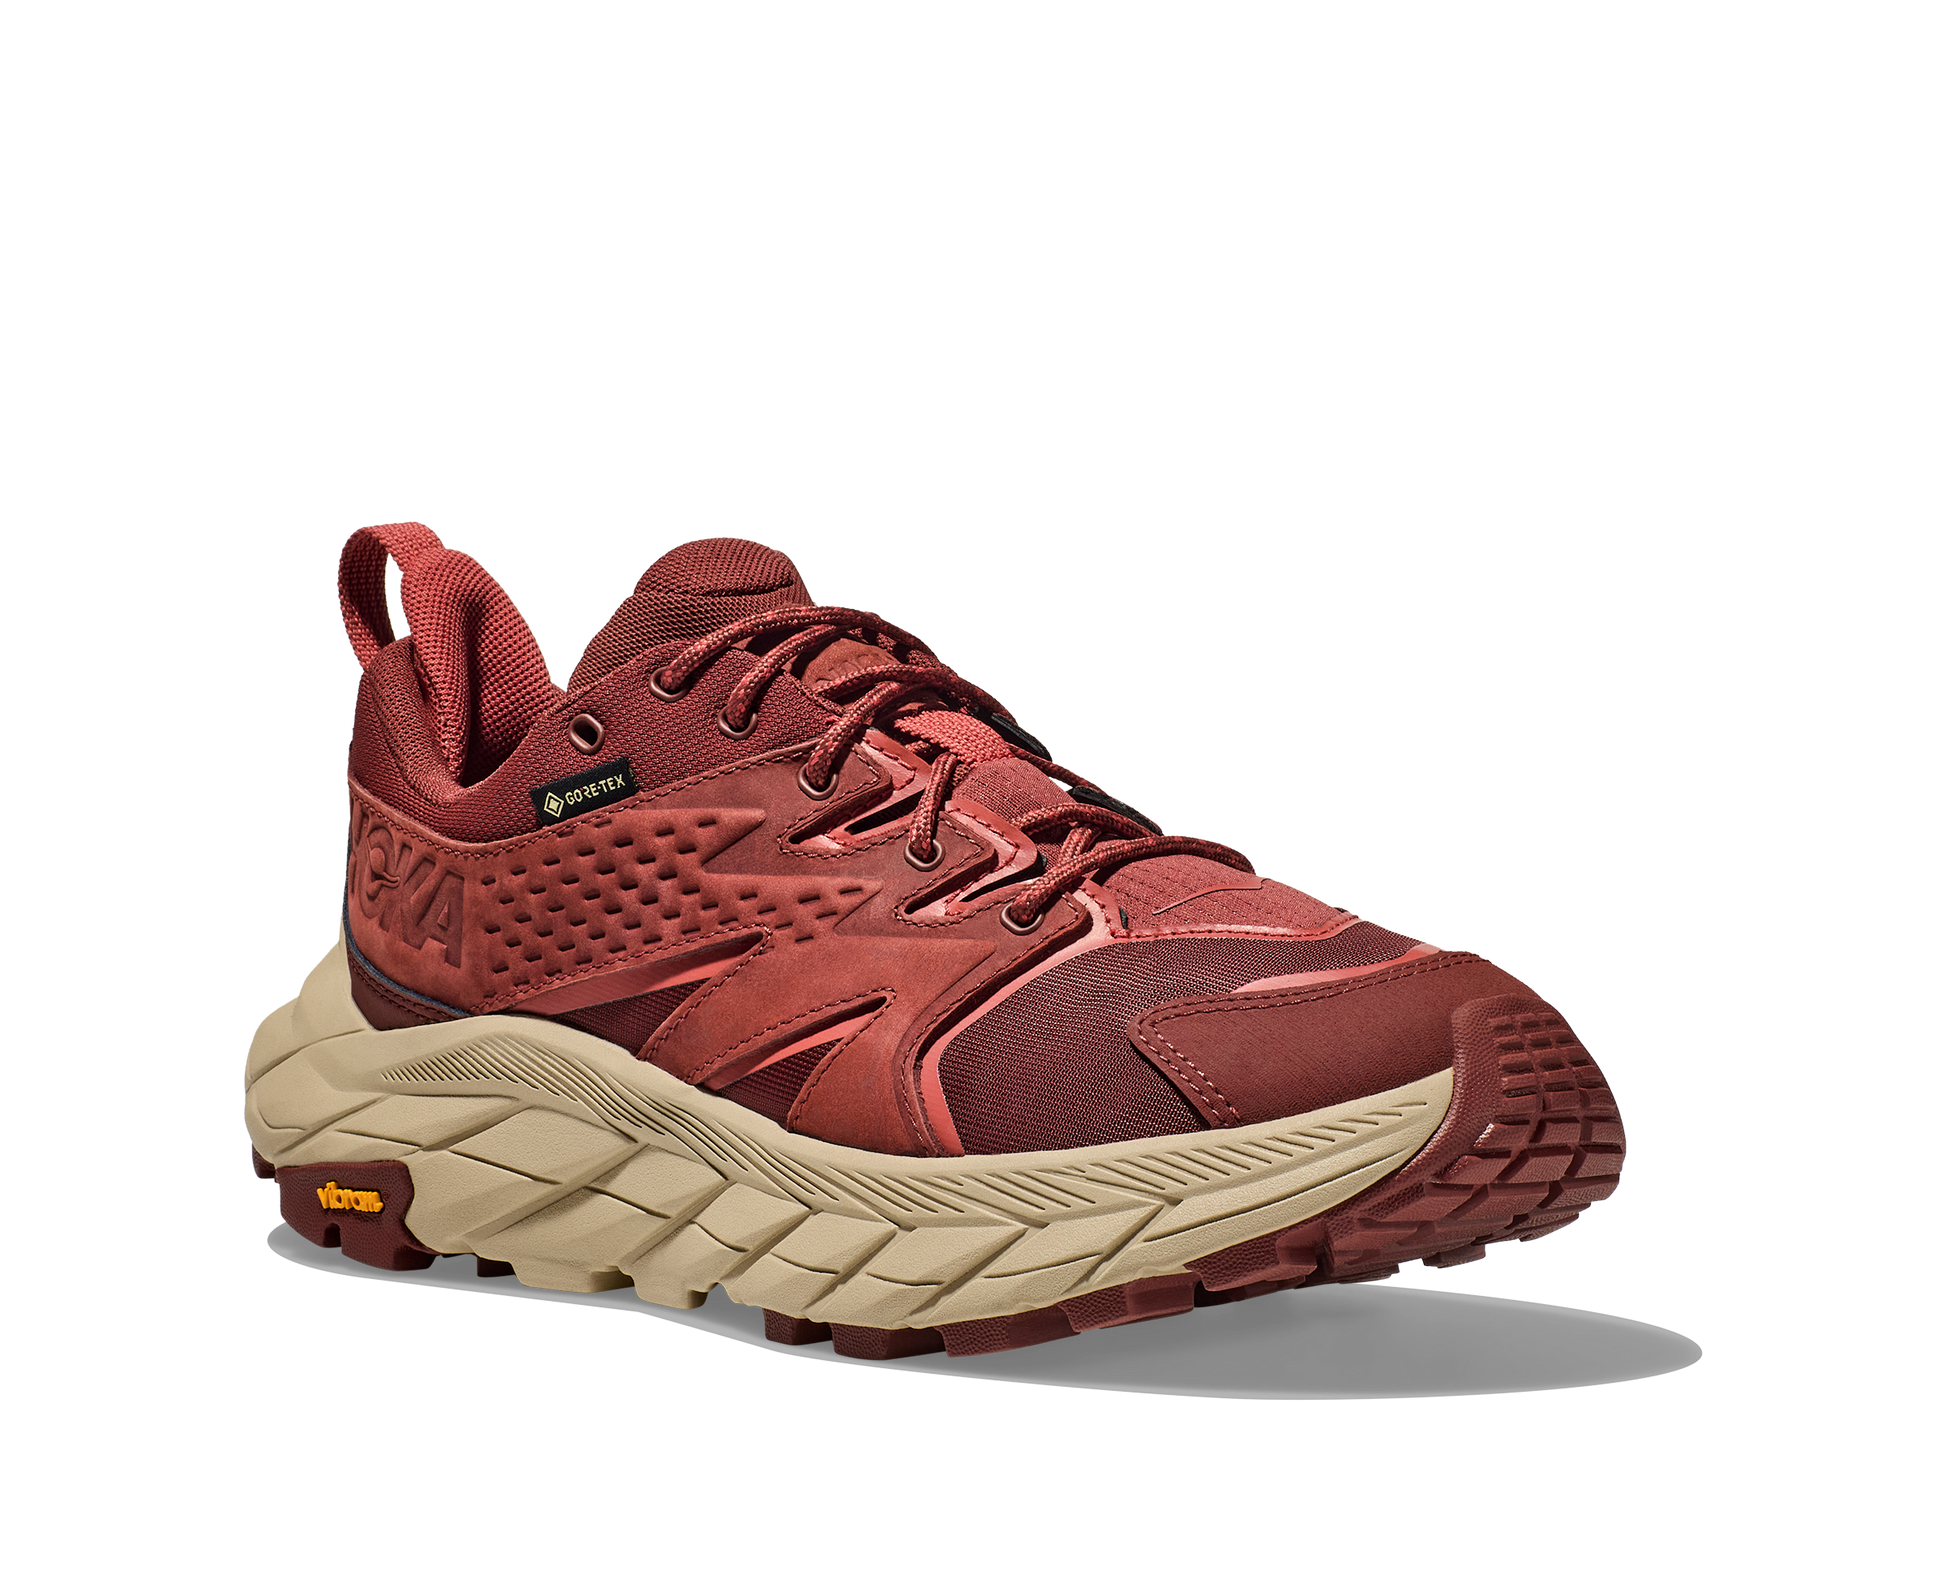 Anacapa W GTX low, röd vattentät sko perfekt för vandring i alla underlag och väder. Hos Hoka specialisterna i Sverige.